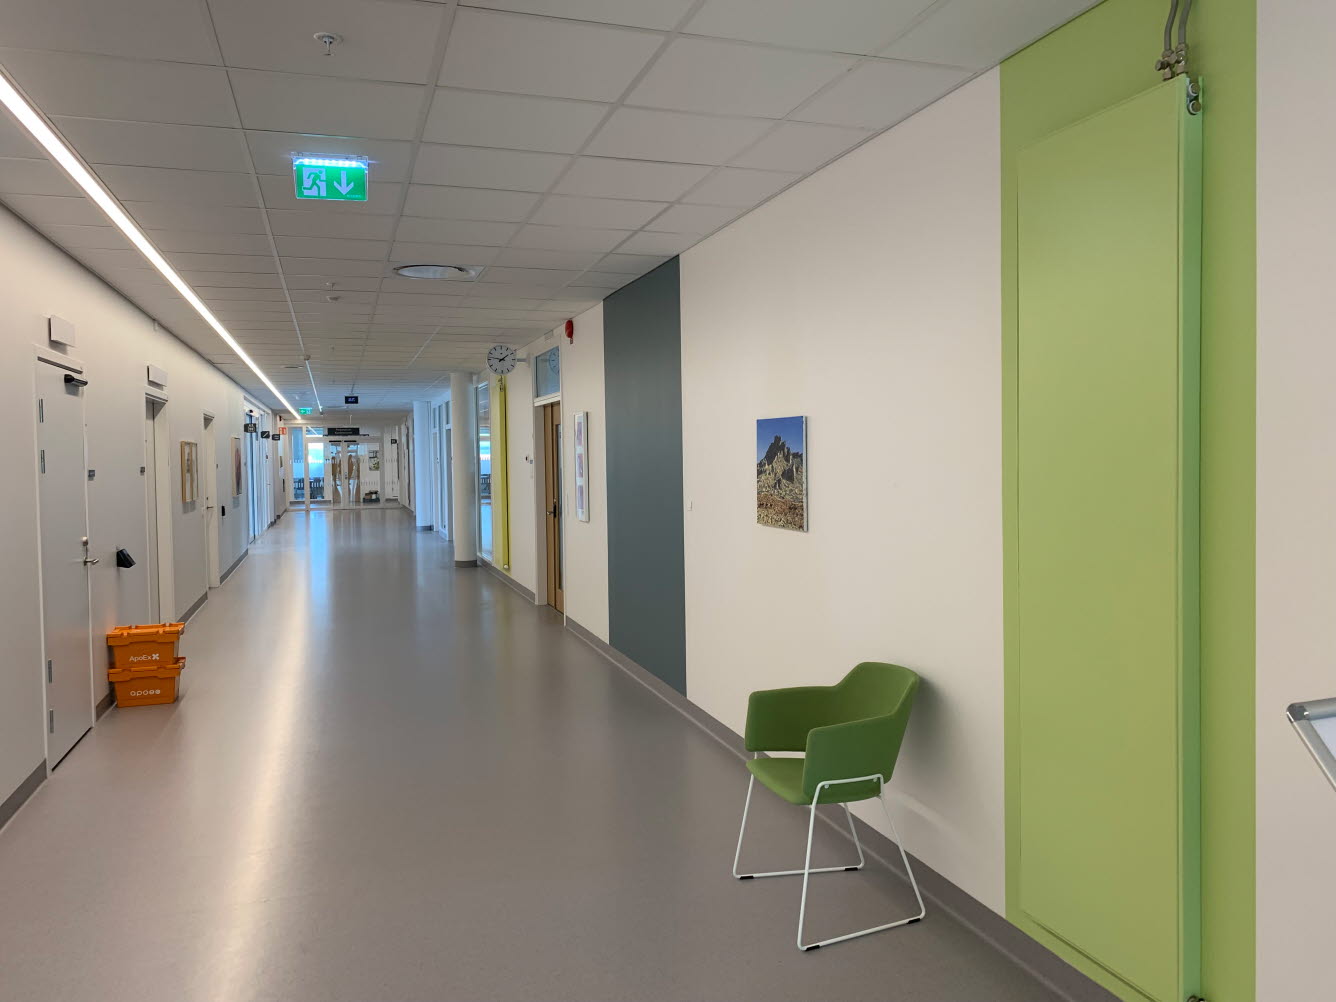 En korridor med vita väggar och inslag av olika gröna nyanser.